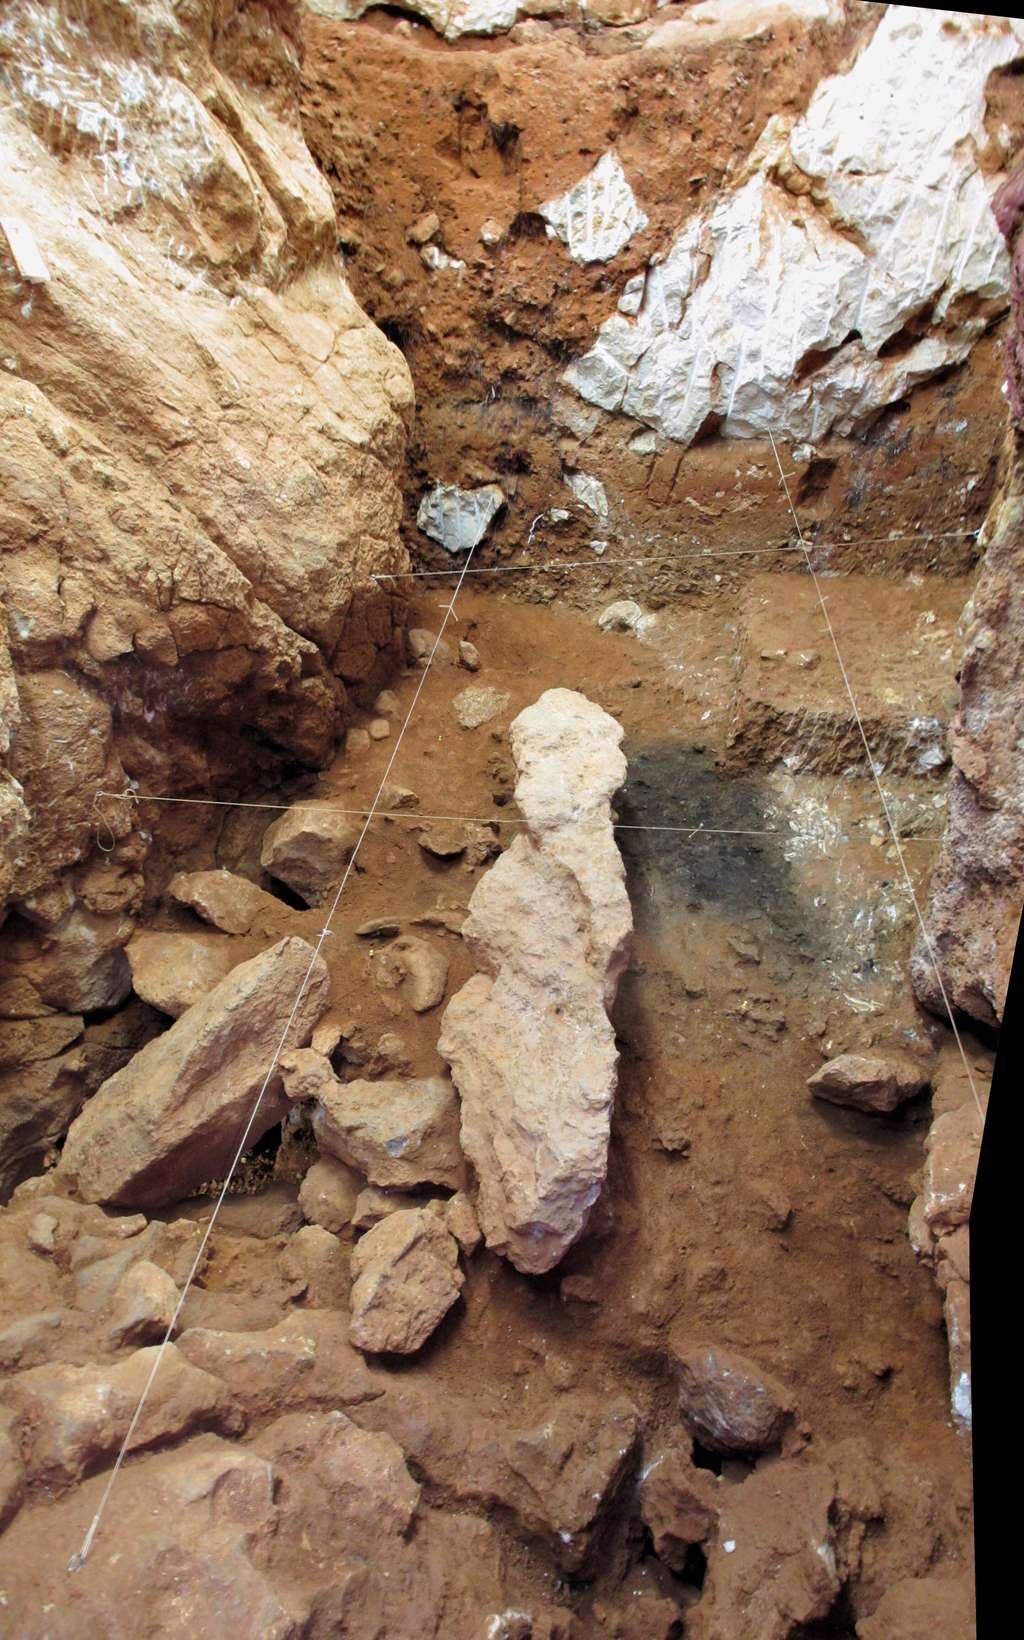 Fouilles dans la grotte d'Oliveira au Portugal. Les restes d'un foyer sont visibles (zones noircies). © João Zilhão